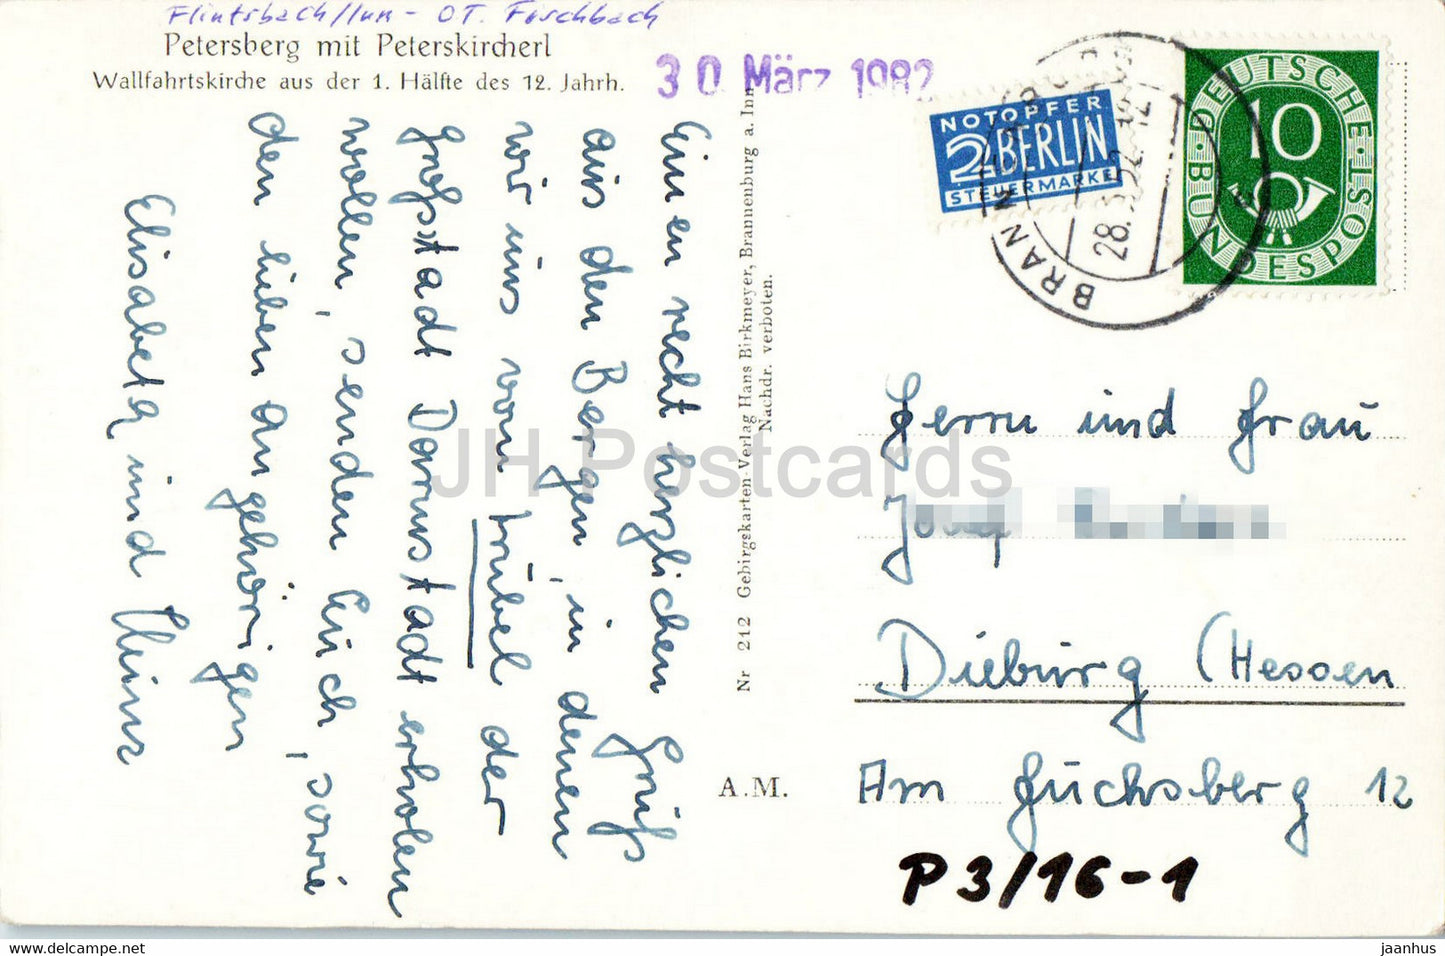 Petersberg mit Peterskircherl - Wallfahrtskirche - alte Postkarte - 1952 - Deutschland - gebraucht